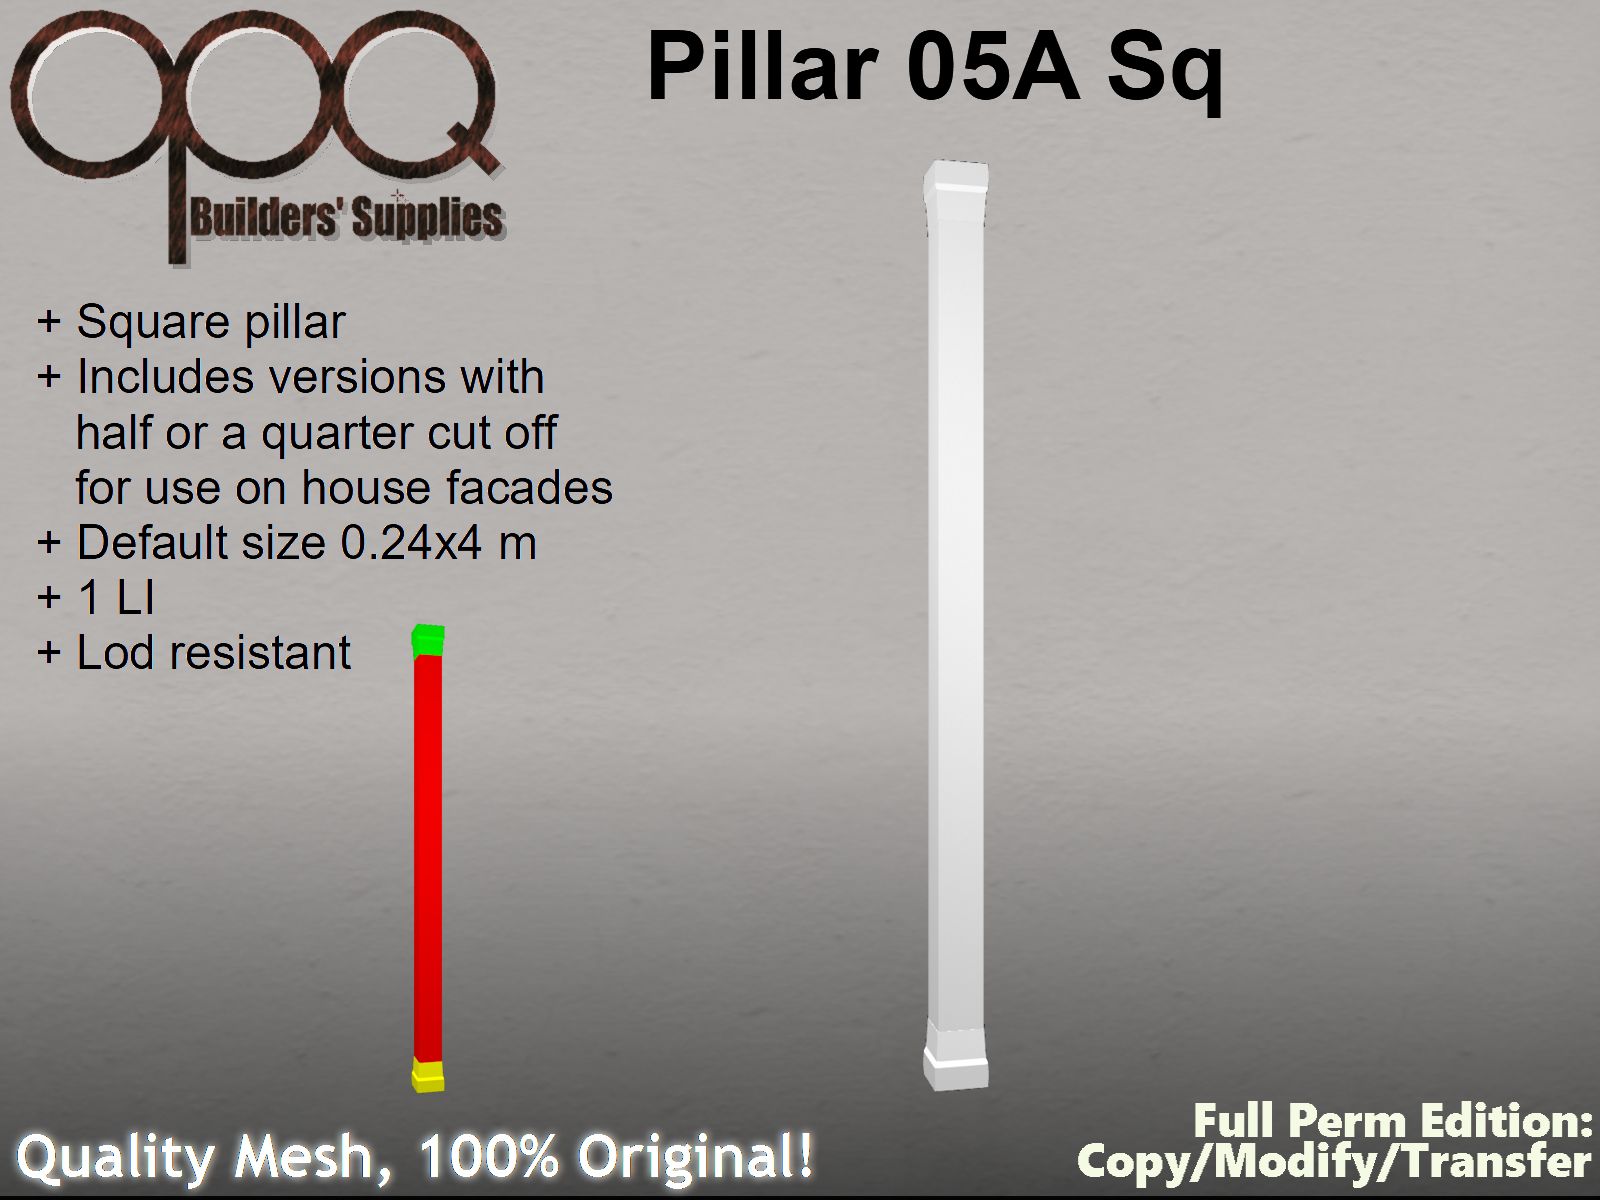 OPQ Pillar 05A Sq Poster.jpg